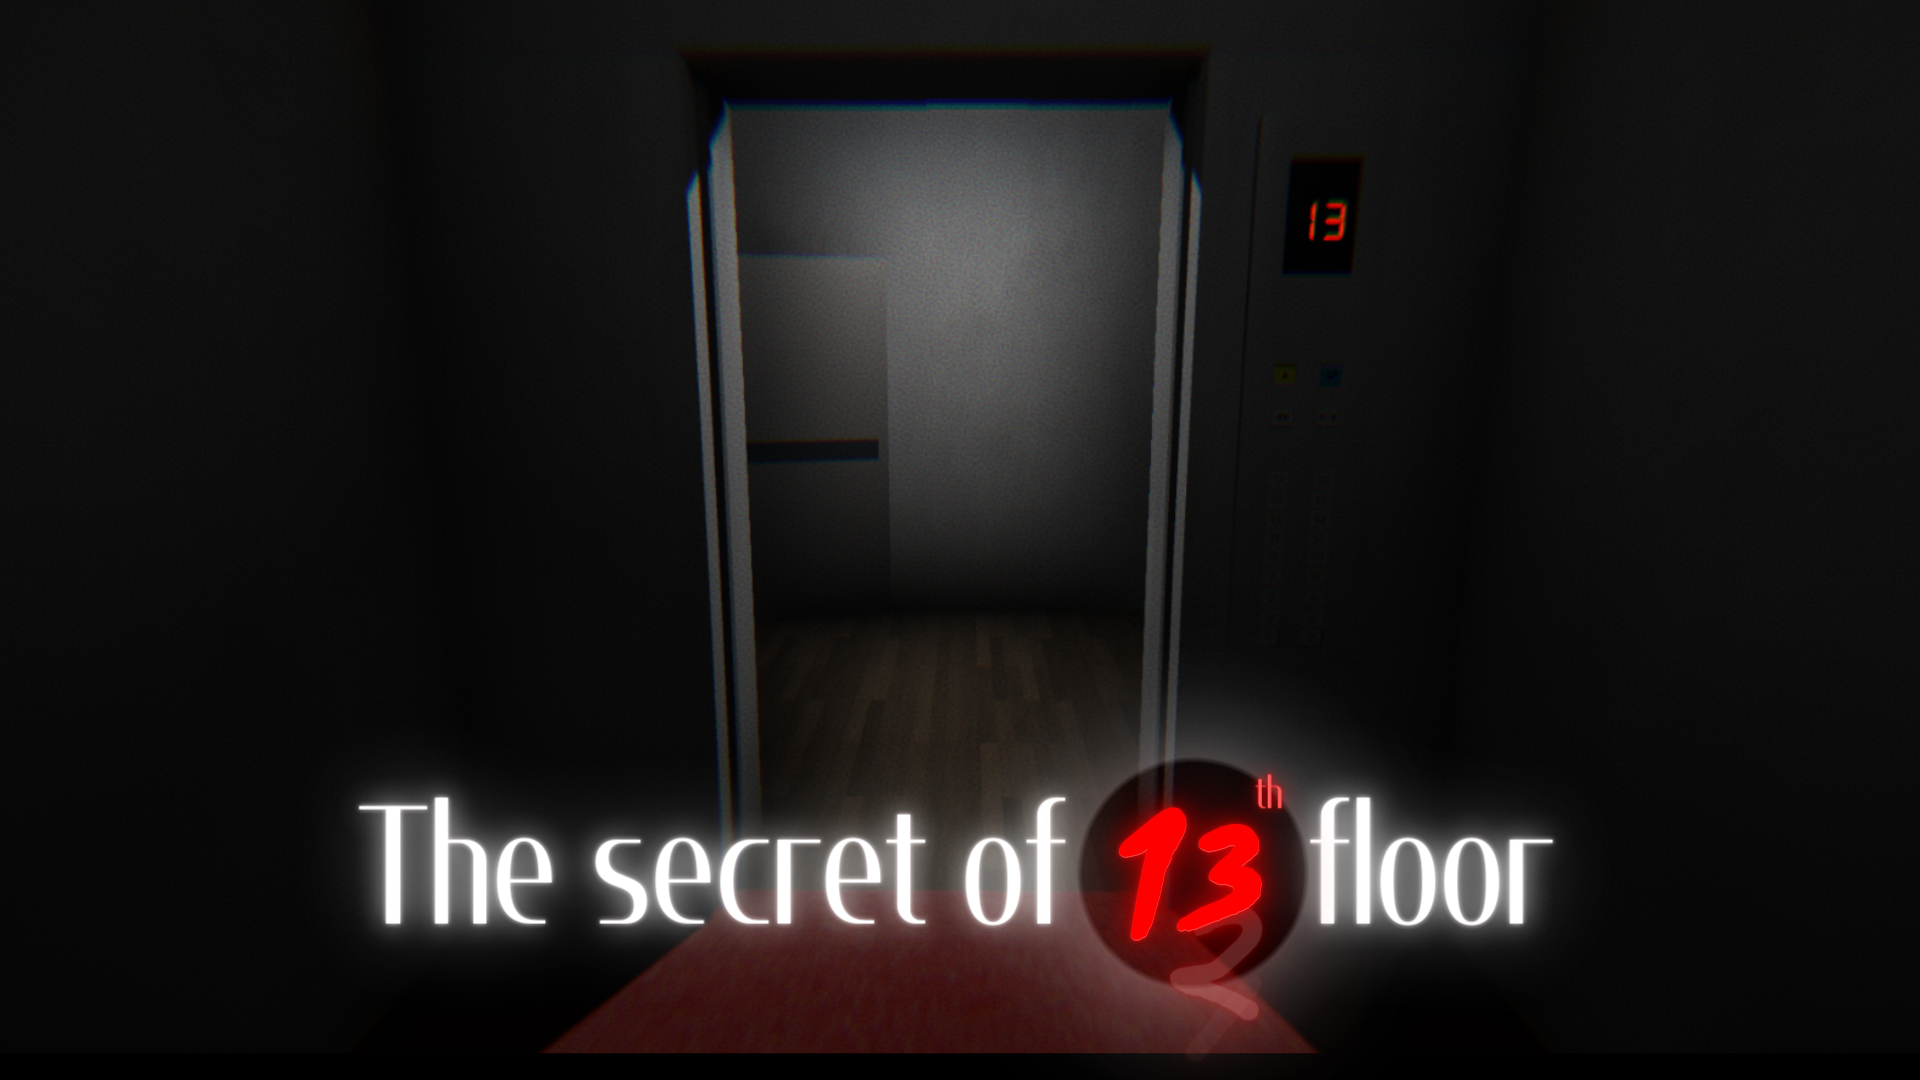 The secret of 13 floor